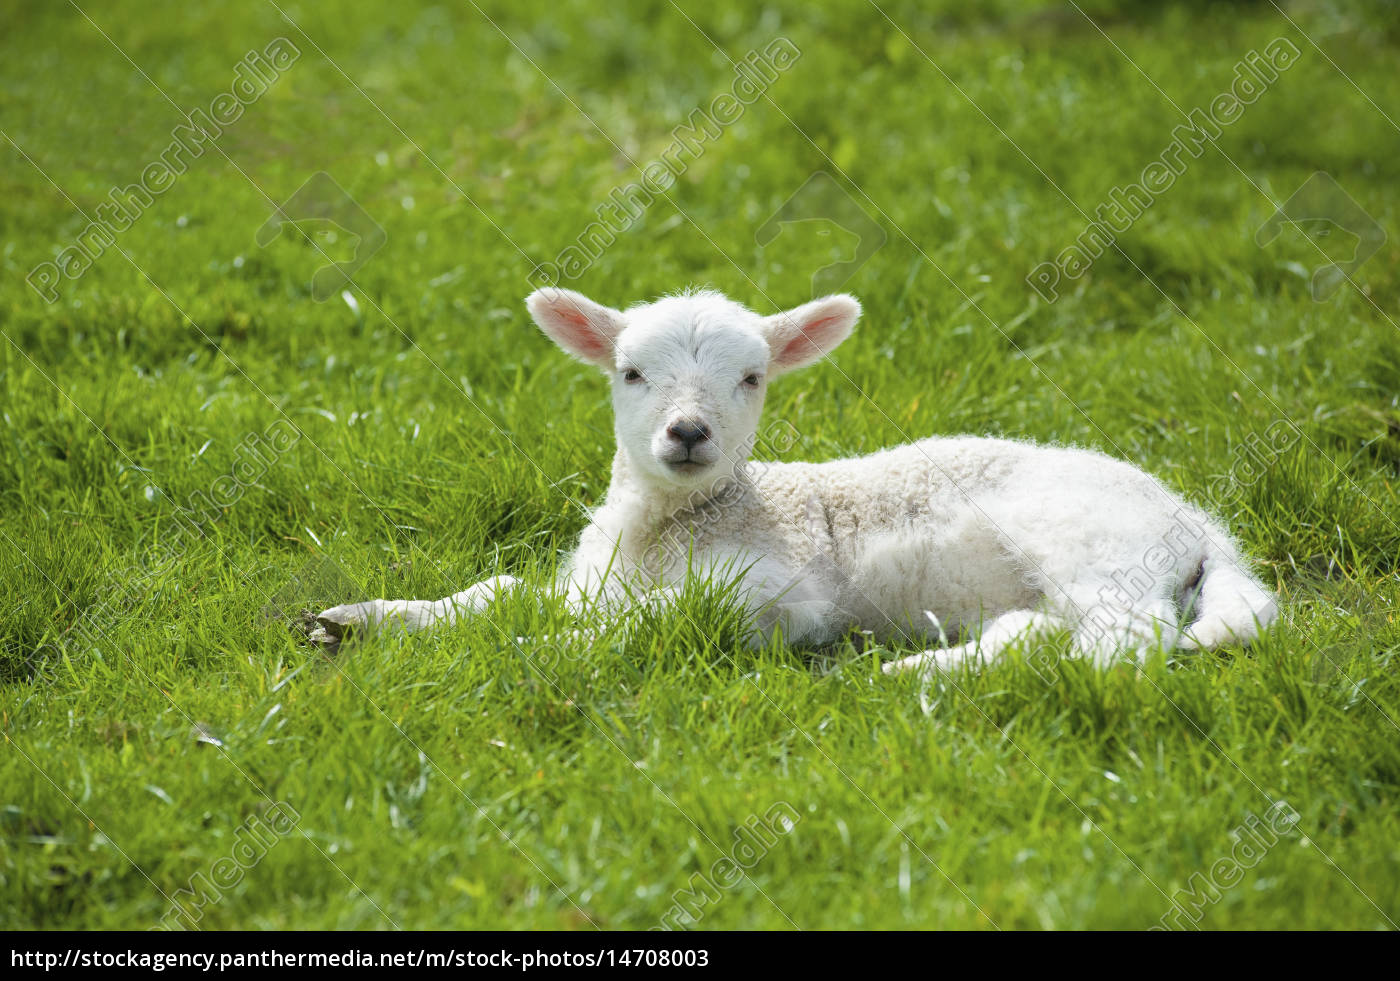 ein kleines junges lamm mit weißem fell,das auf dem - Lizenzfreies Bild ...